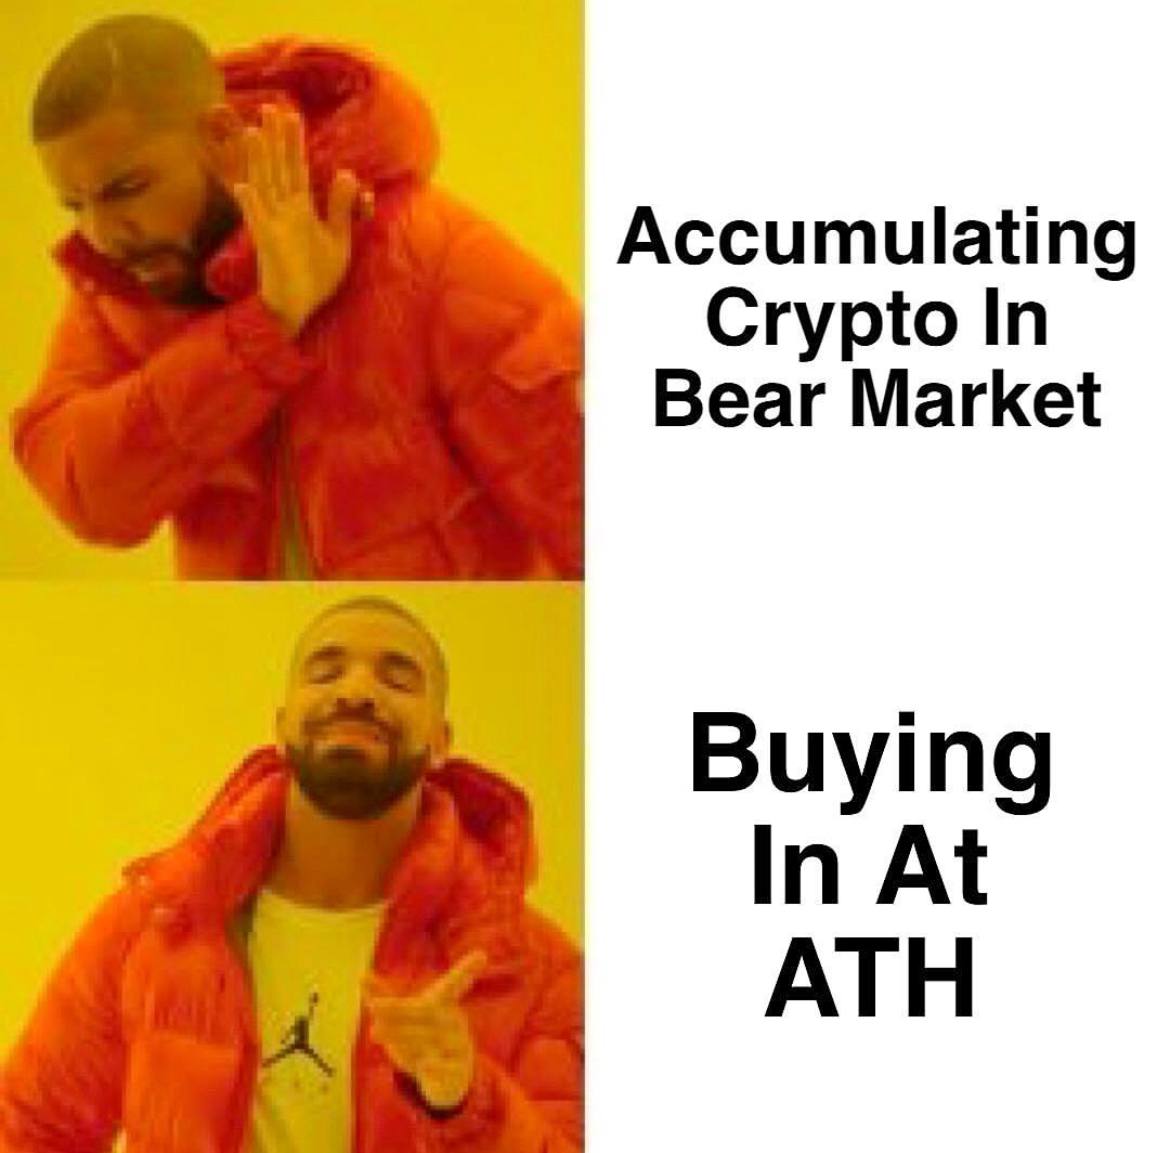 Buying Crypto at ATH